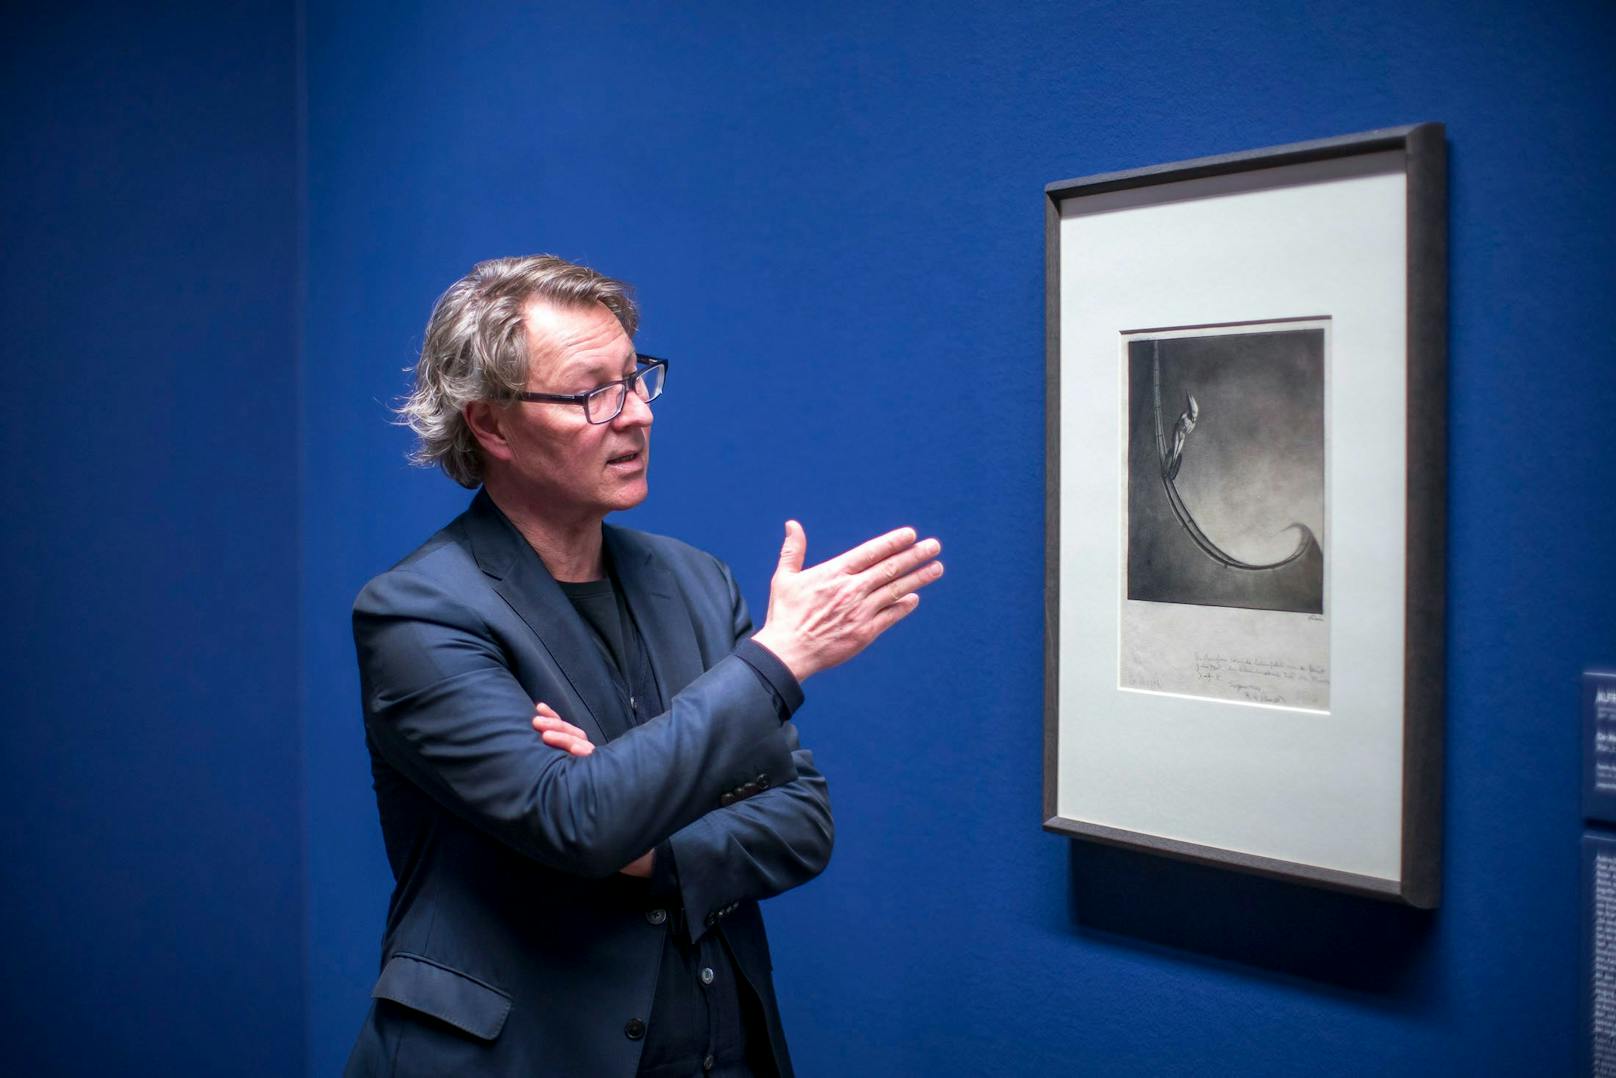 Kurator und Direktor Wipplinger über Kubins Arbeiten: "Man kann das kunsthistorisch relevante Werk von Kubin nicht von seinen Erfahrungen und schrecklichen Erlebnissen trennen."